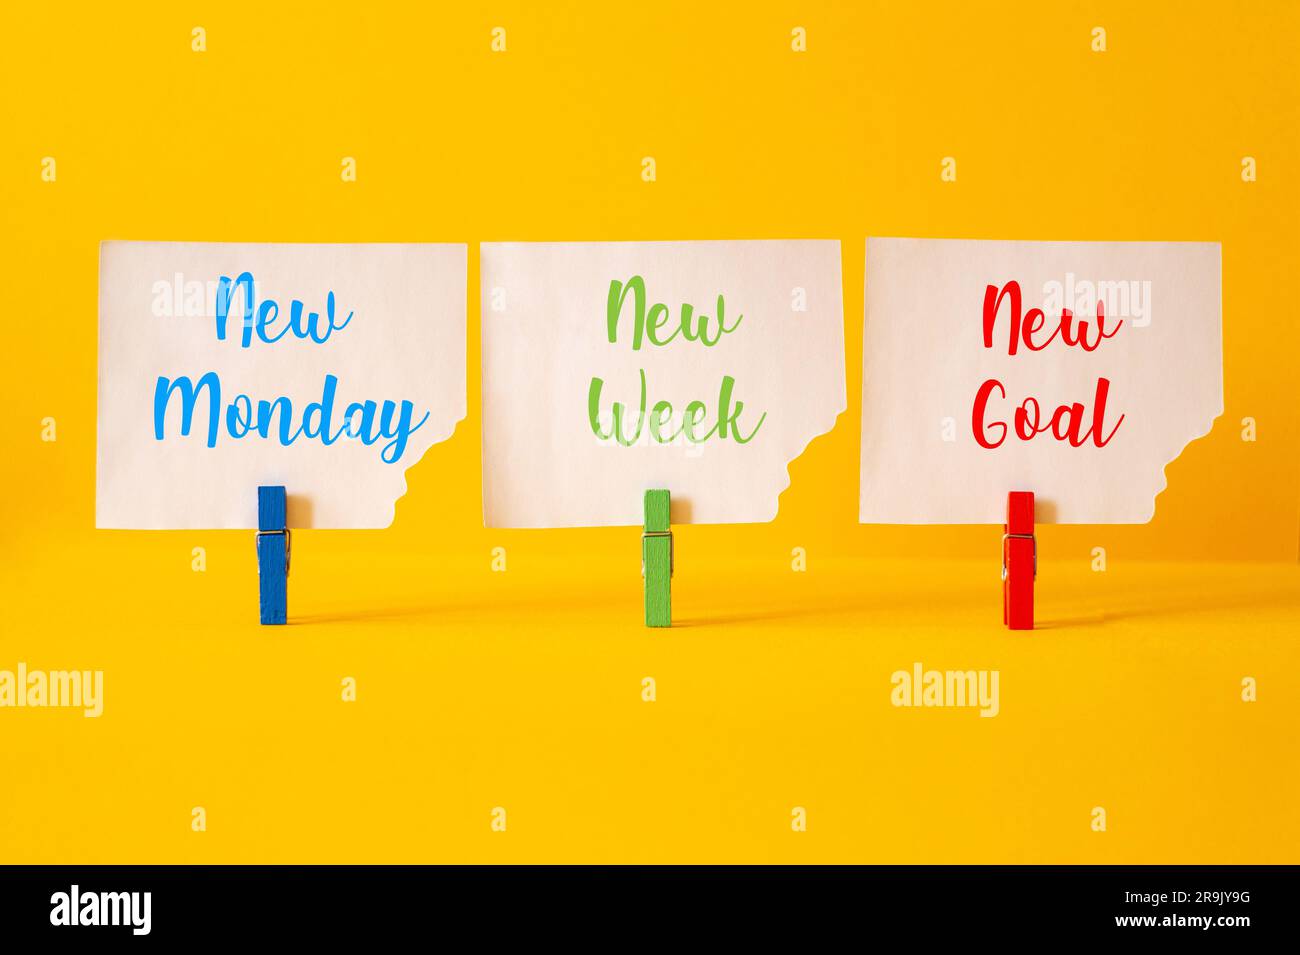 Neuer montag, neue Woche, neues Ziel – Wortspiel auf Bausteinen, Text, Buchstaben Stockfoto